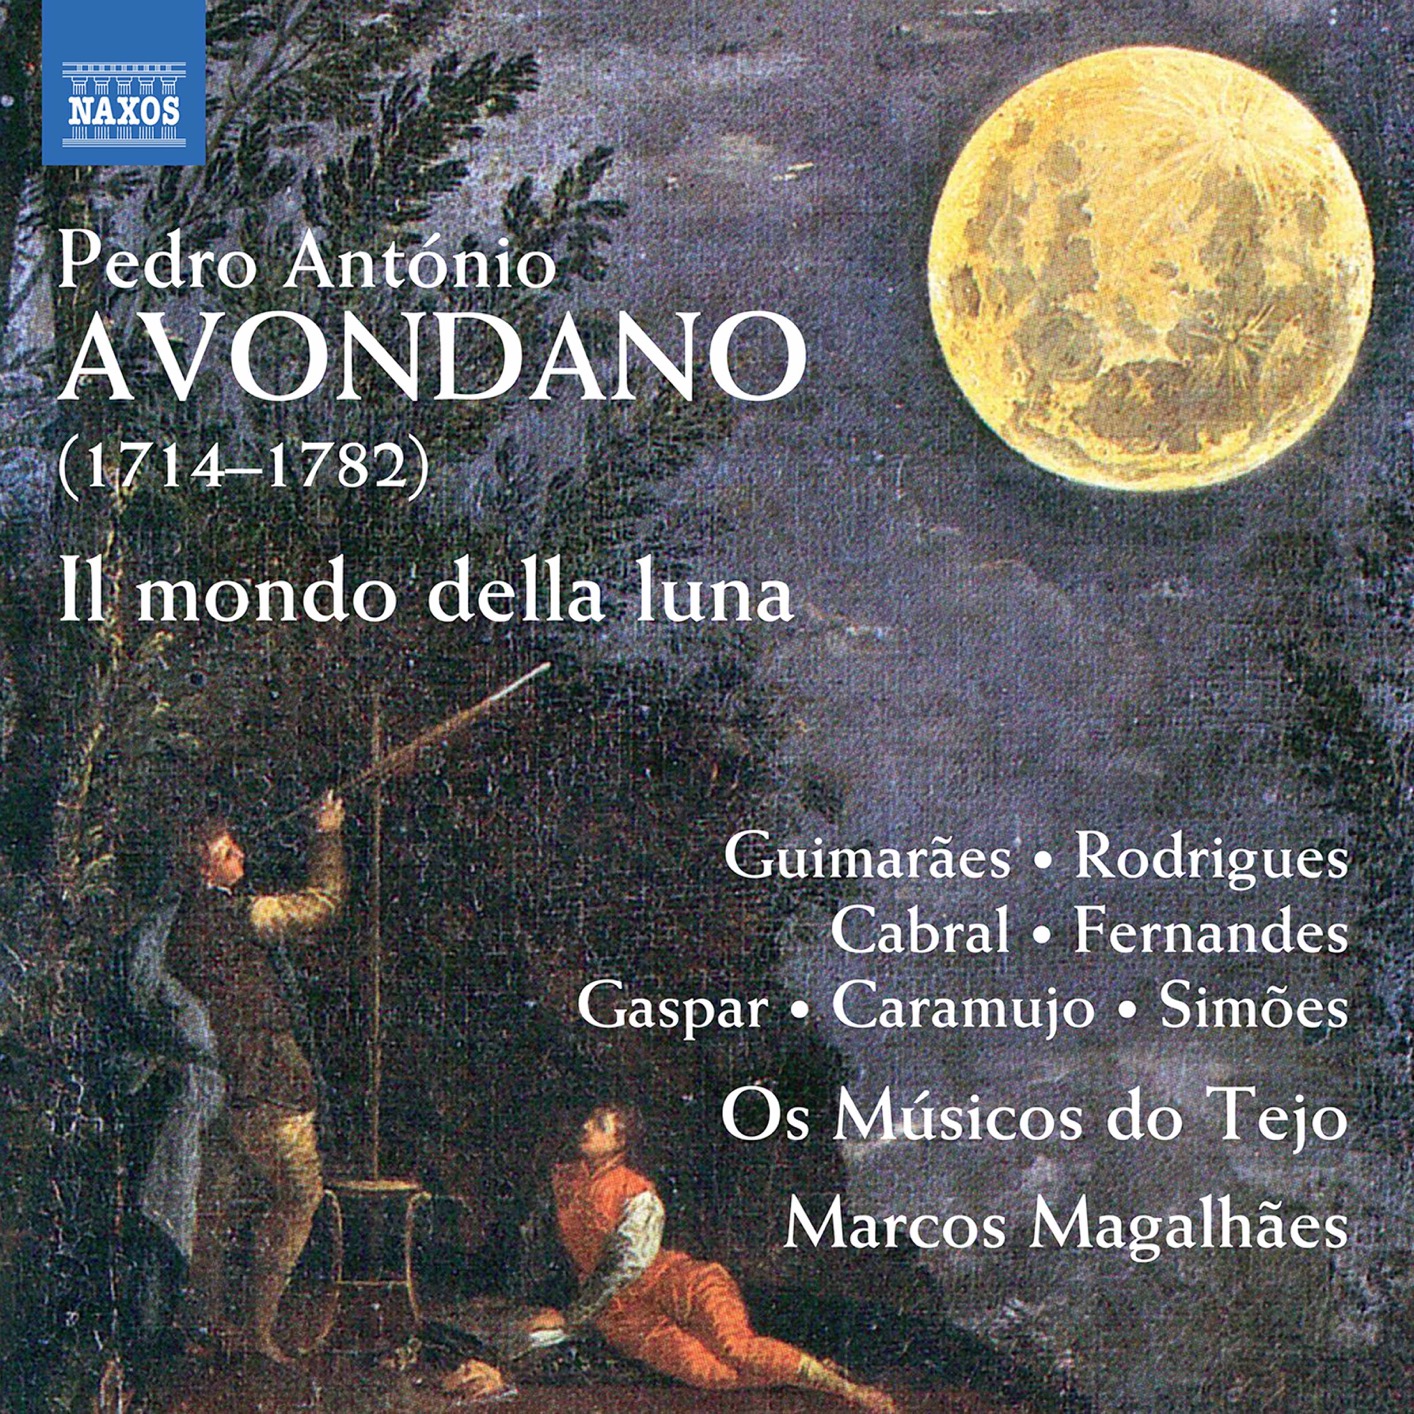 Marcos Magalhaes, Os Musicos do Tejo – Avondano: Il mondo della luna (Excerpts) (2020) [FLAC 24bit/48kHz]